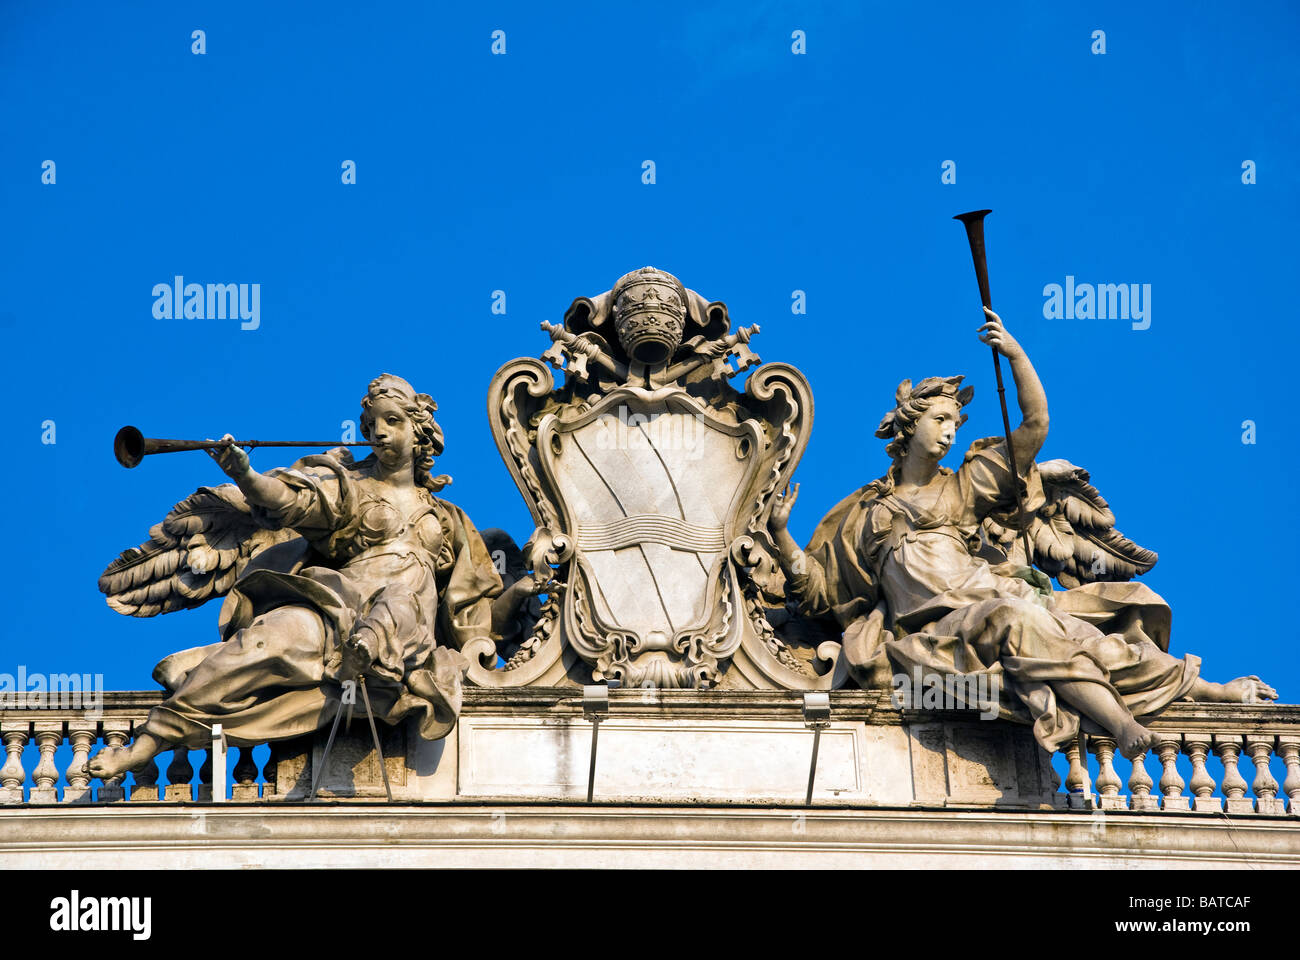 Emblème de la pape Clemente XII ci-dessus le palais du Quirinal en place Saint-Pierre à Rome - Italie Banque D'Images